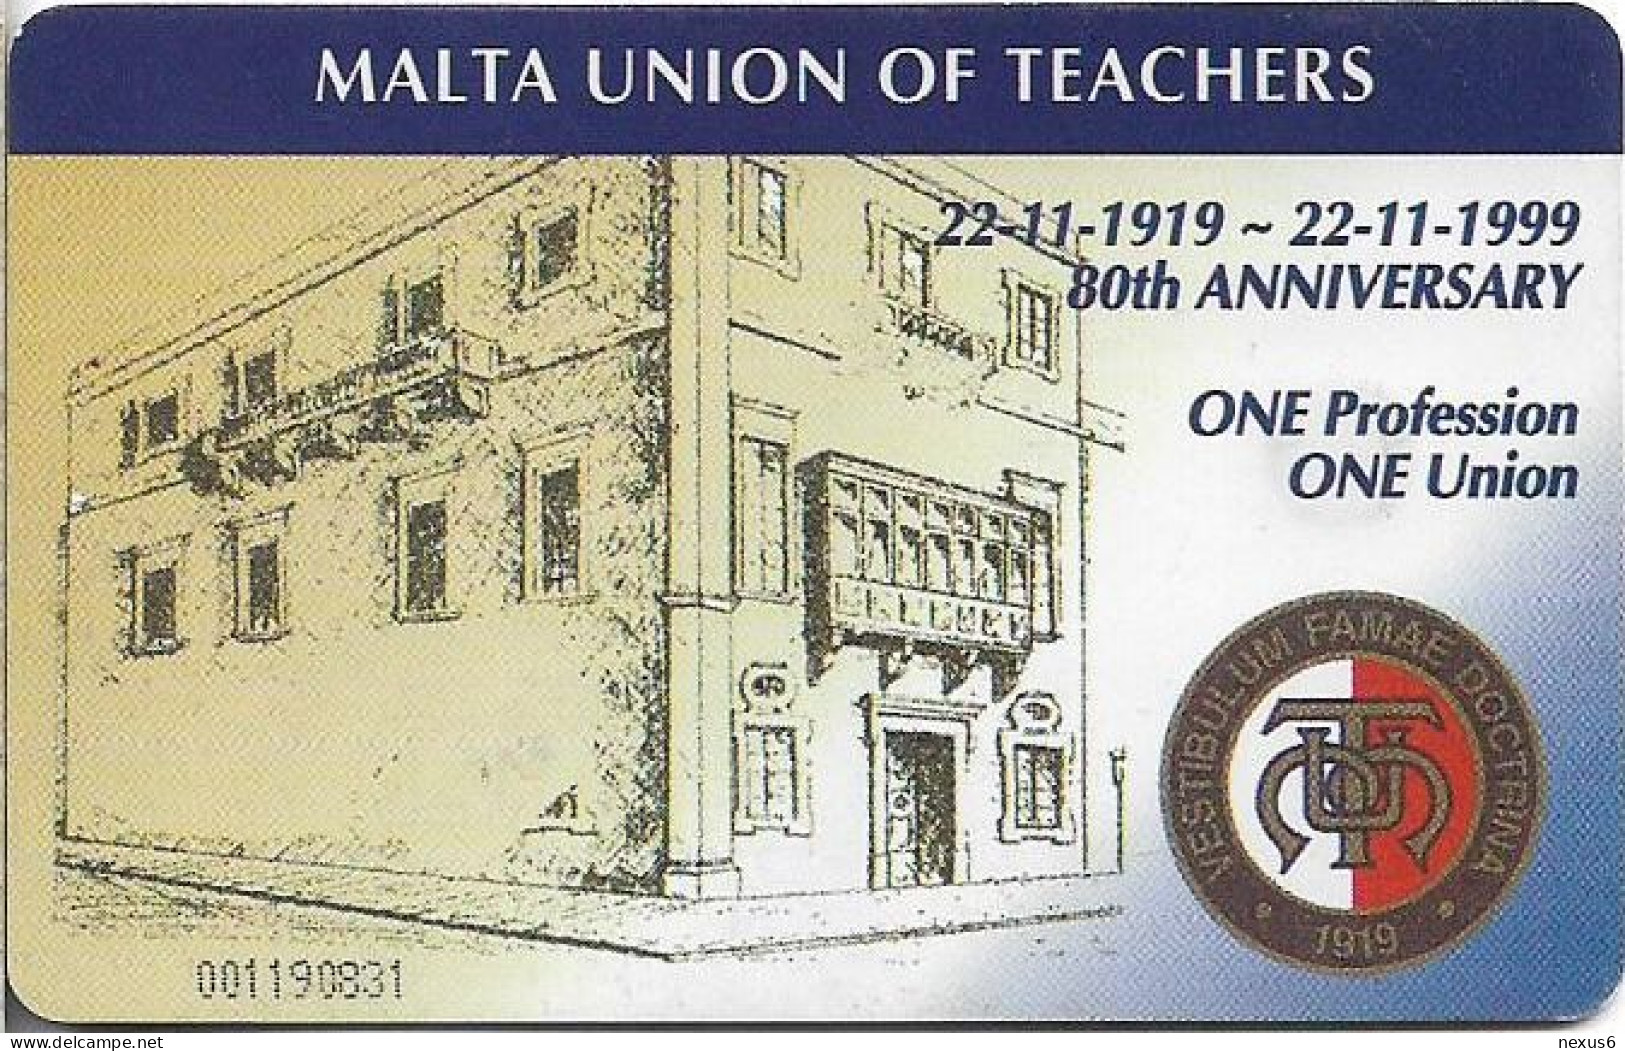 Malta - Maltacom - Antonio Galea MUT Founder, 12.1999, 40U, 10.000ex, Used - Malta